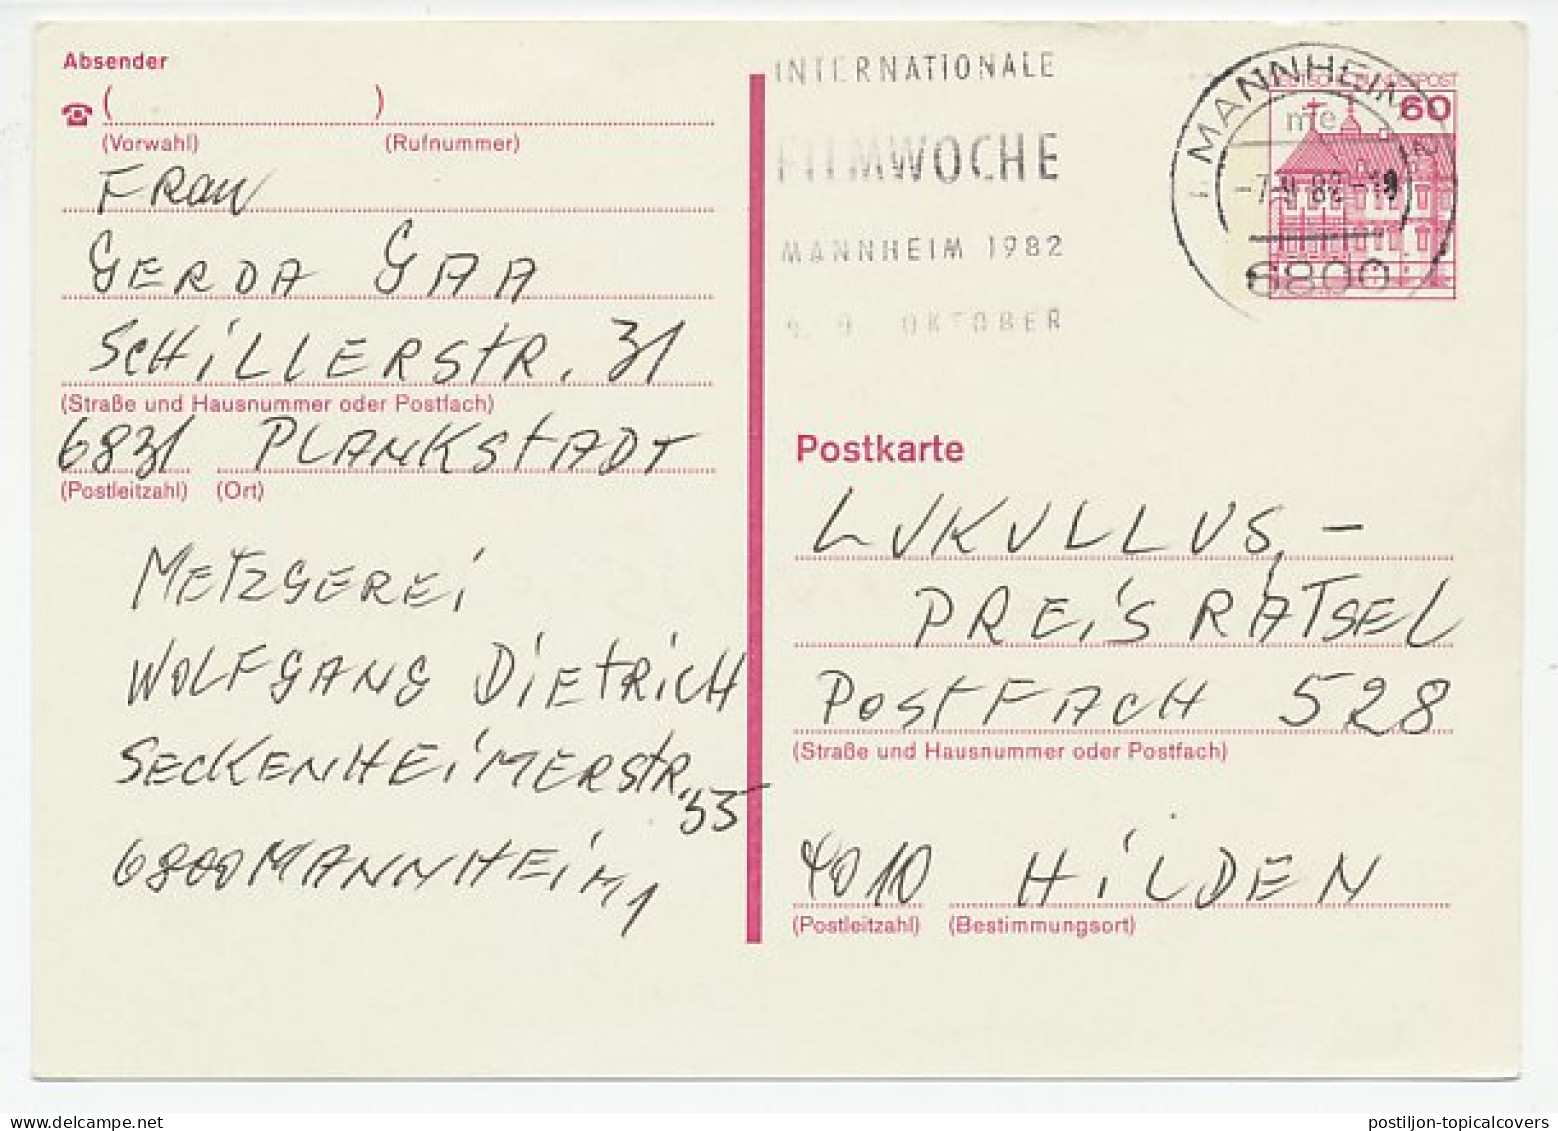 Postcard / Postmark Germany 1982 International Film Week - Cinema